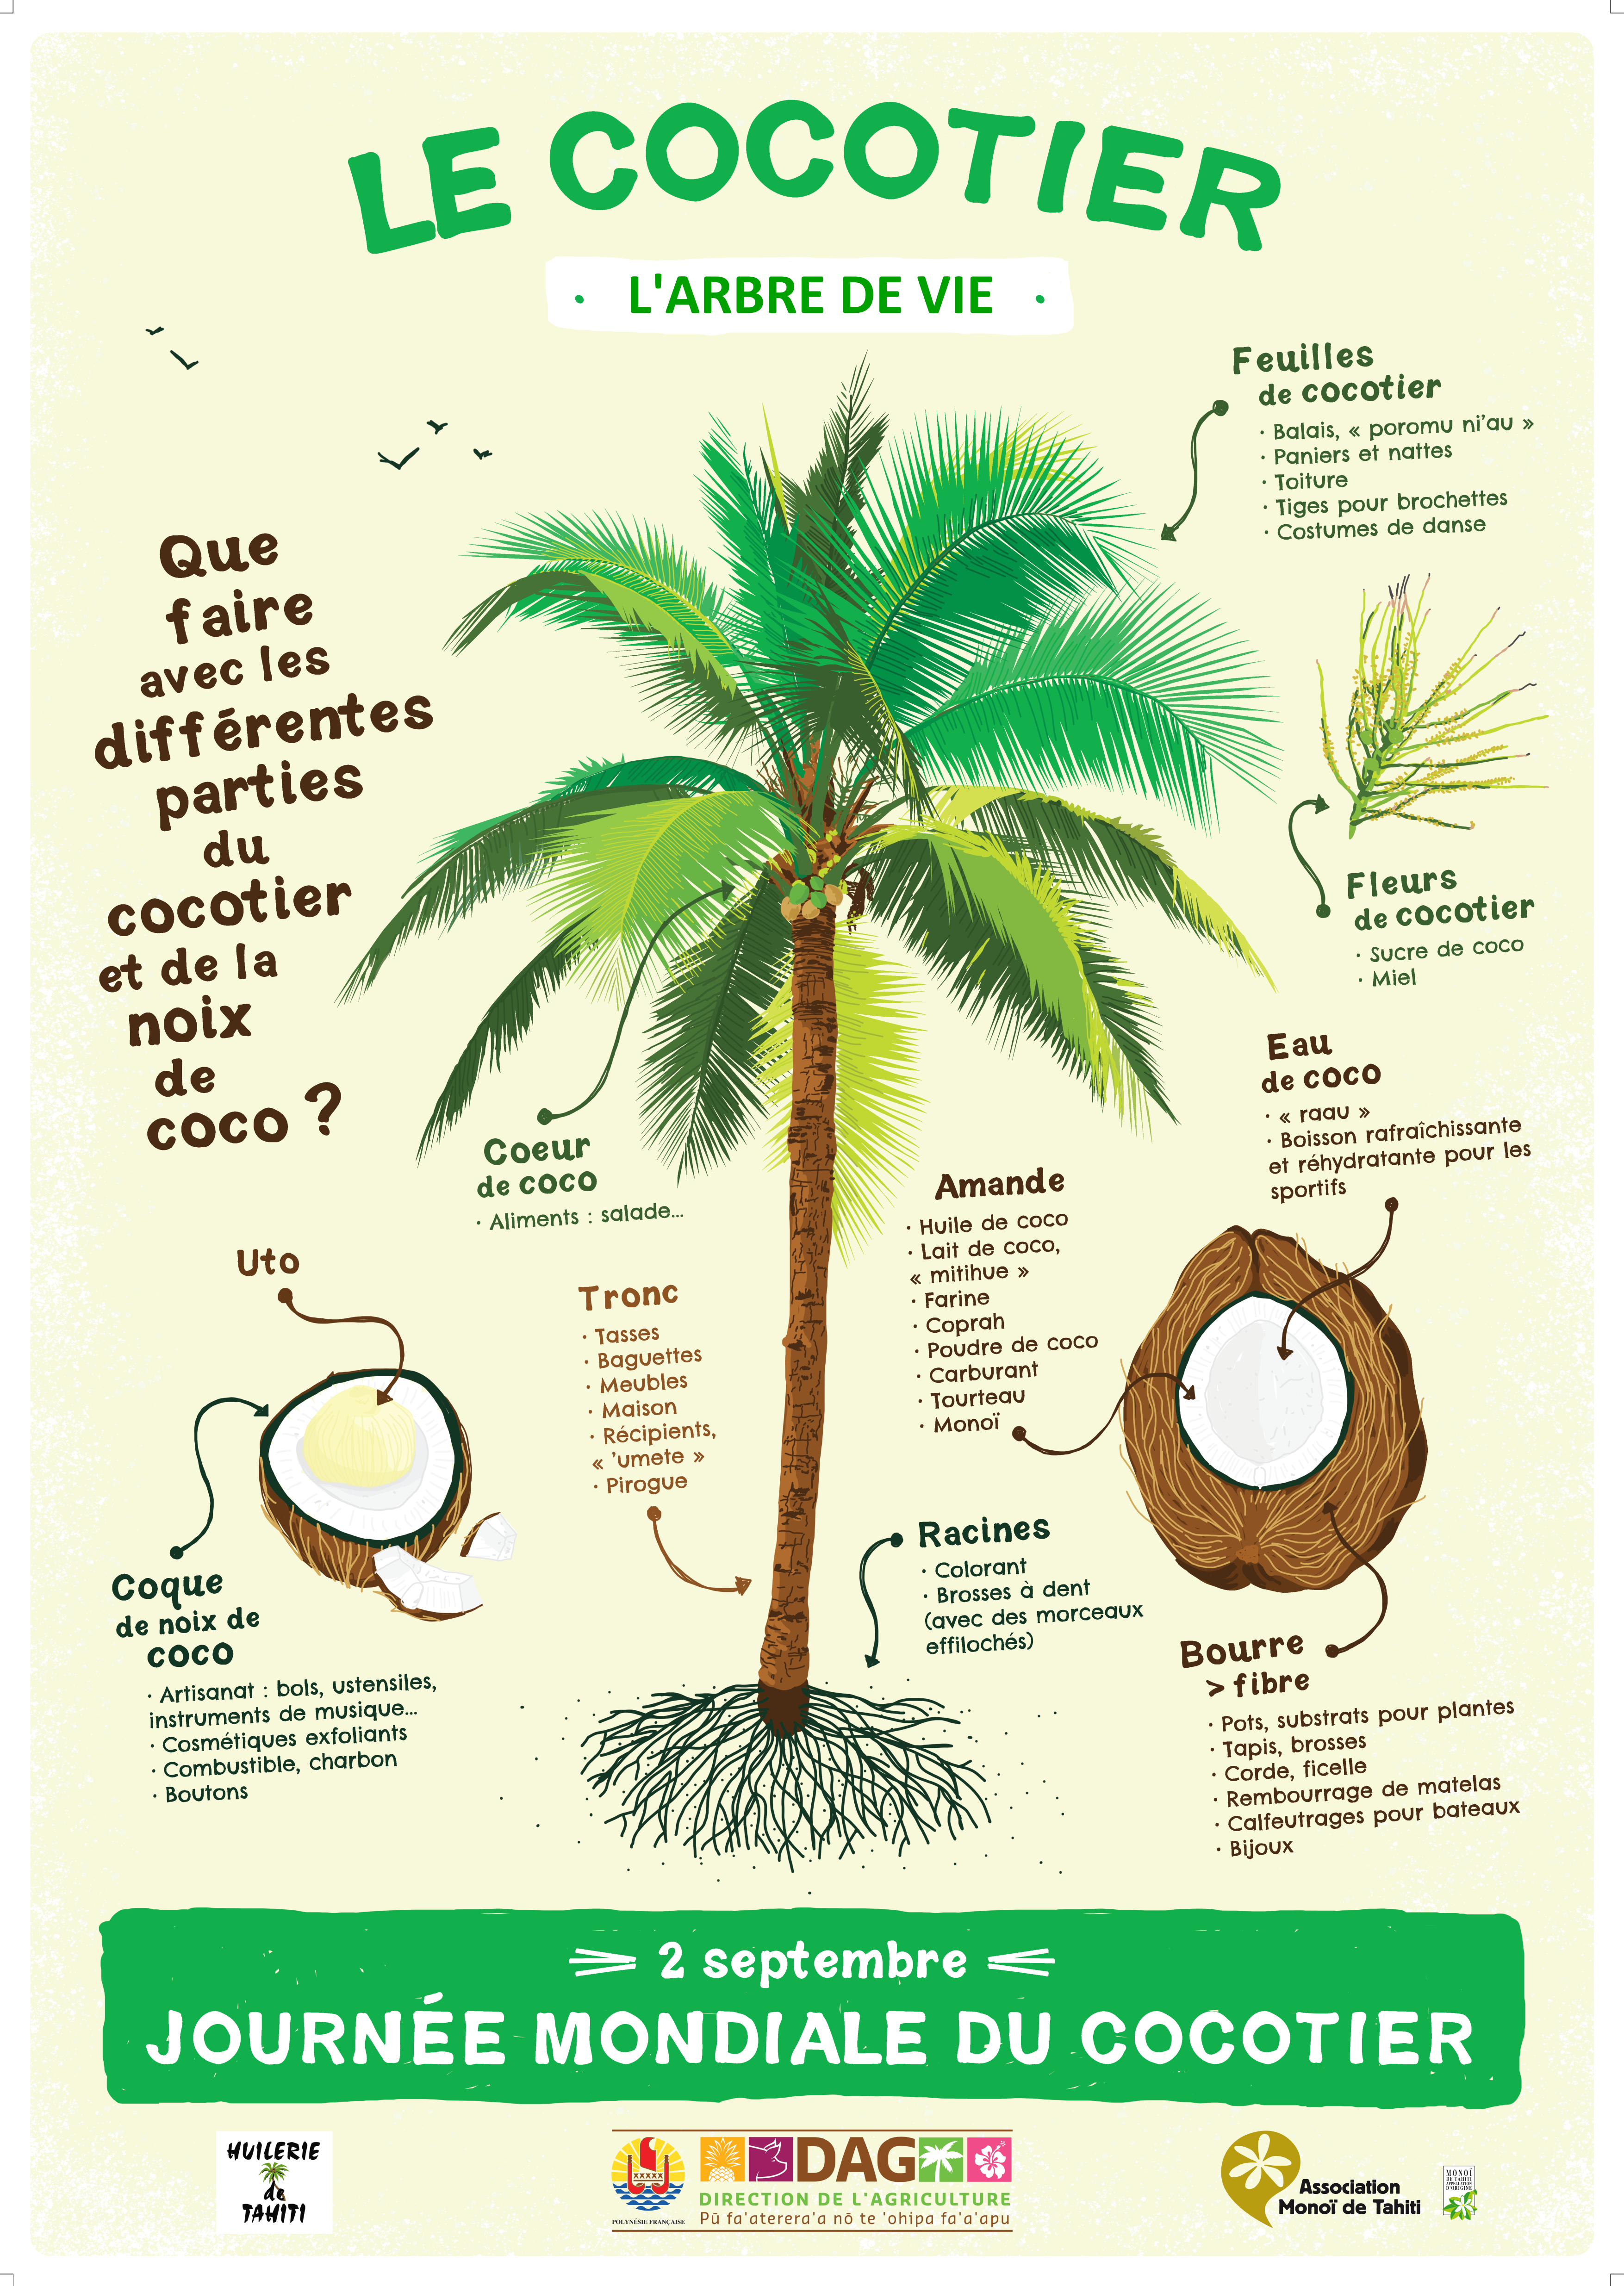 Journée mondiale du cocotier 2 septembre